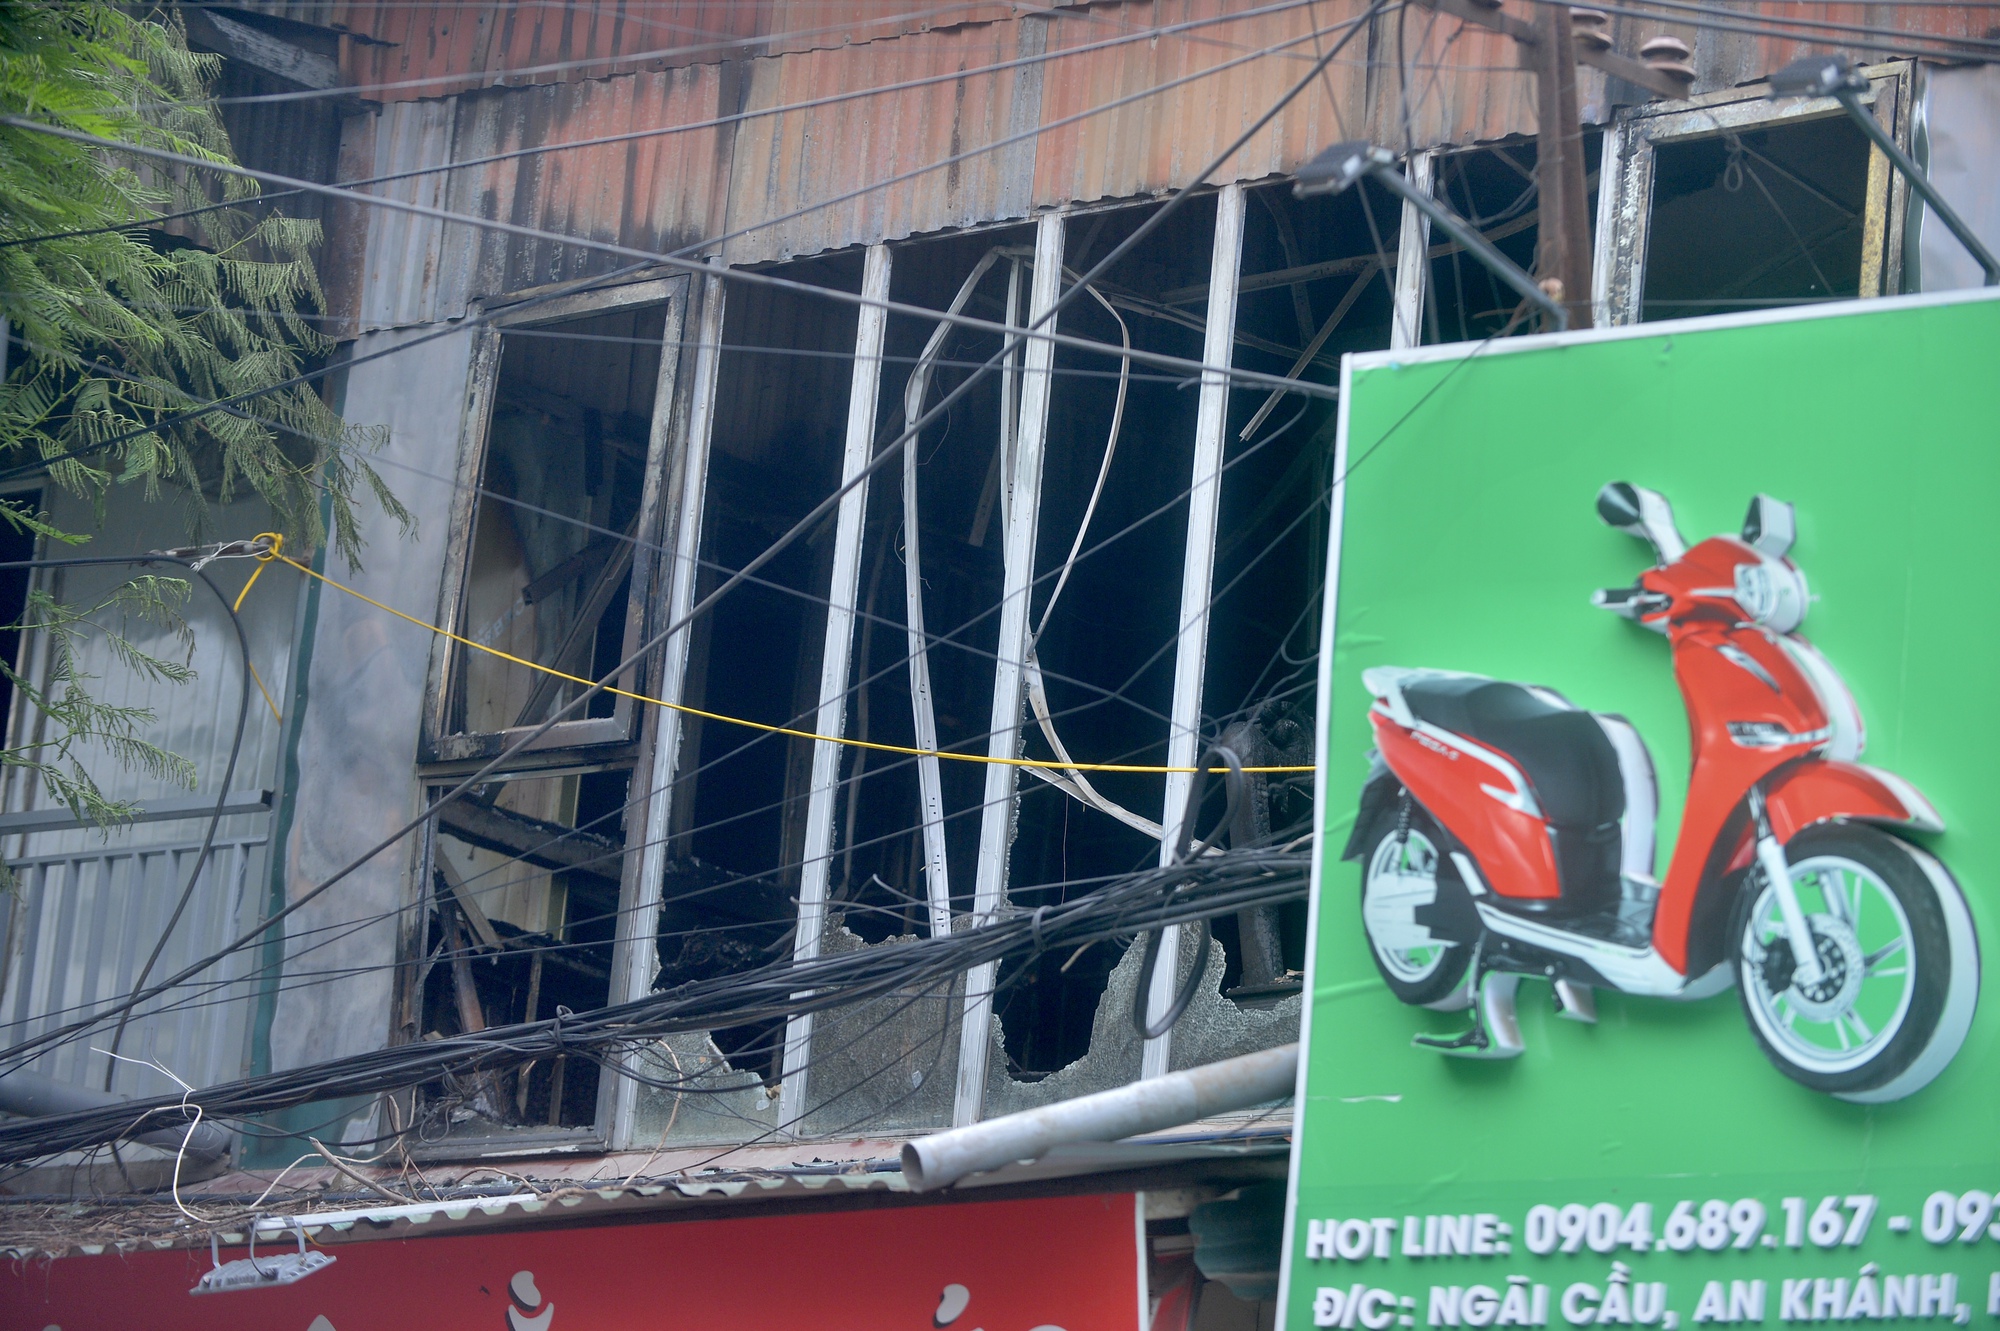 Hiện trường vụ cháy khiến 3 người tử vong: Hàng trăm chiếc xe máy bị thiêu rụi - Ảnh 7.